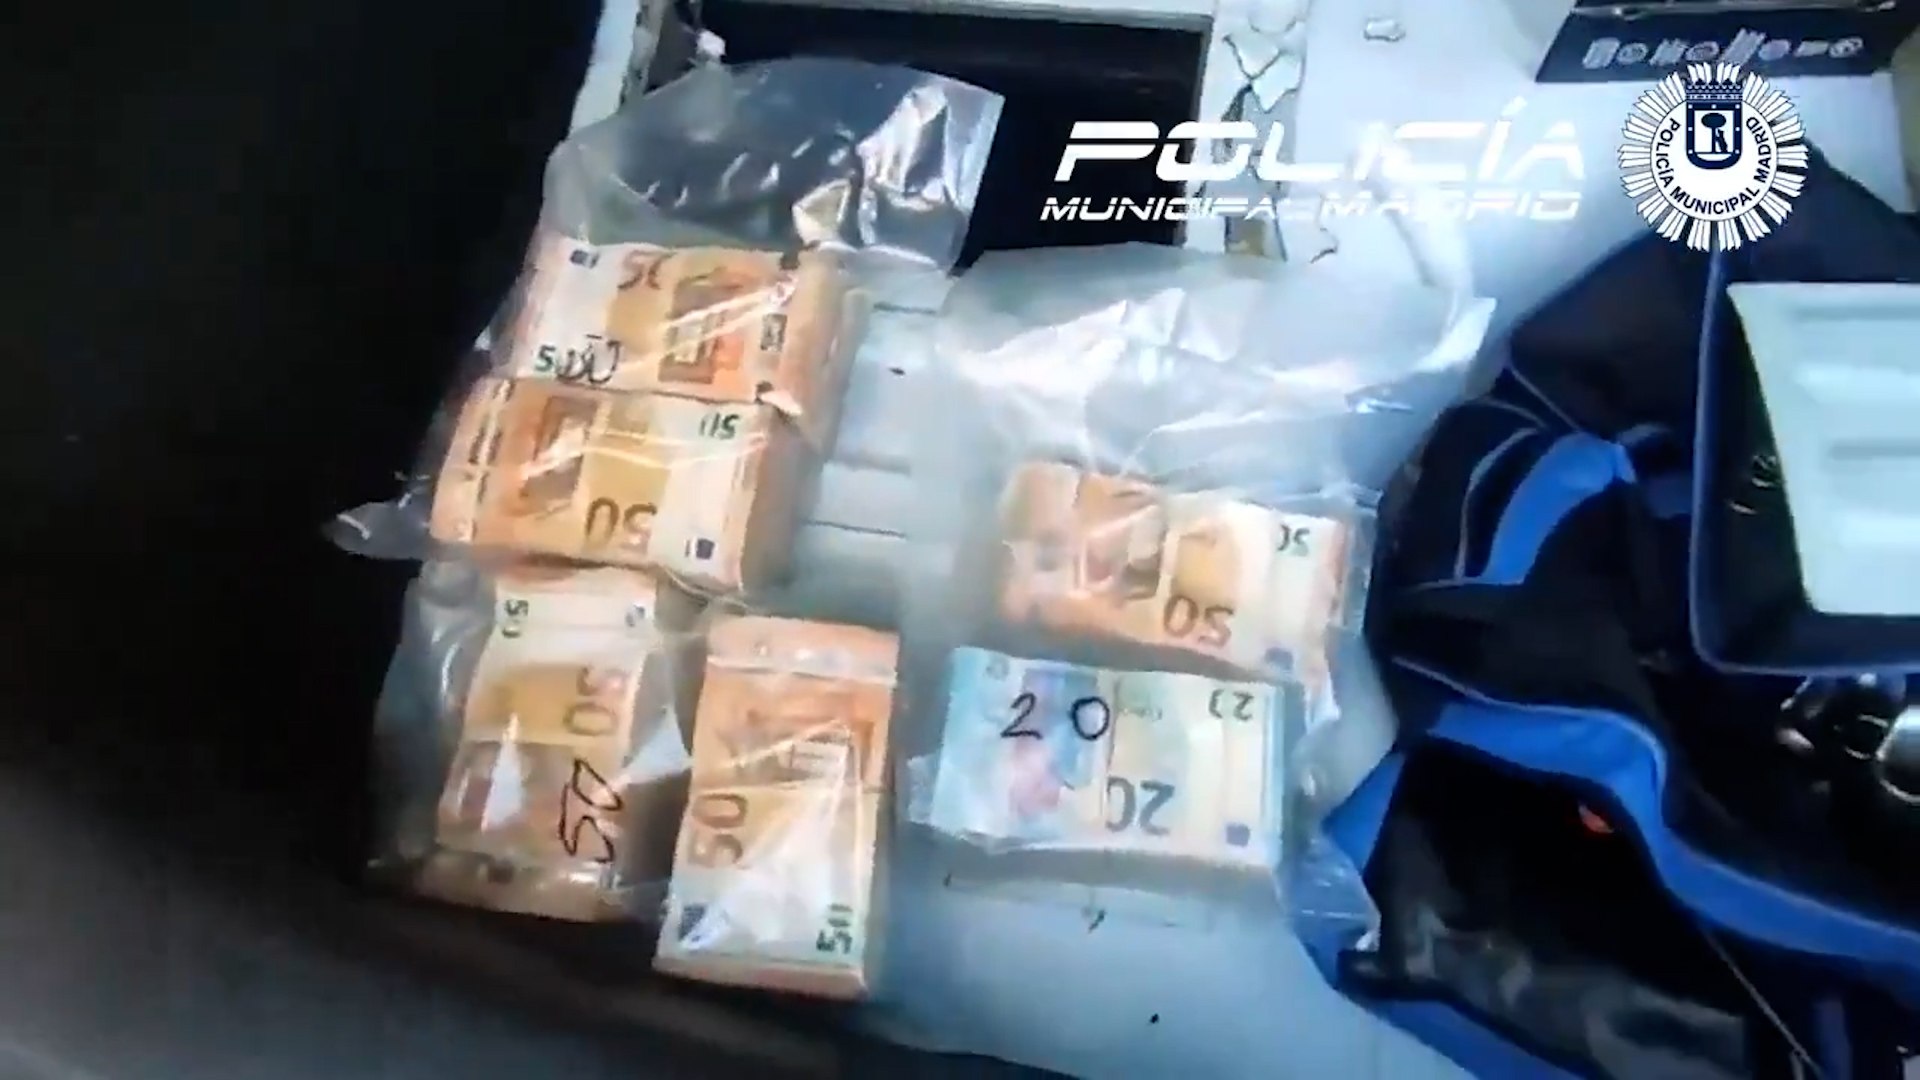 Descubren 120.000 euros dentro de un coche mal aparcado en Madrid